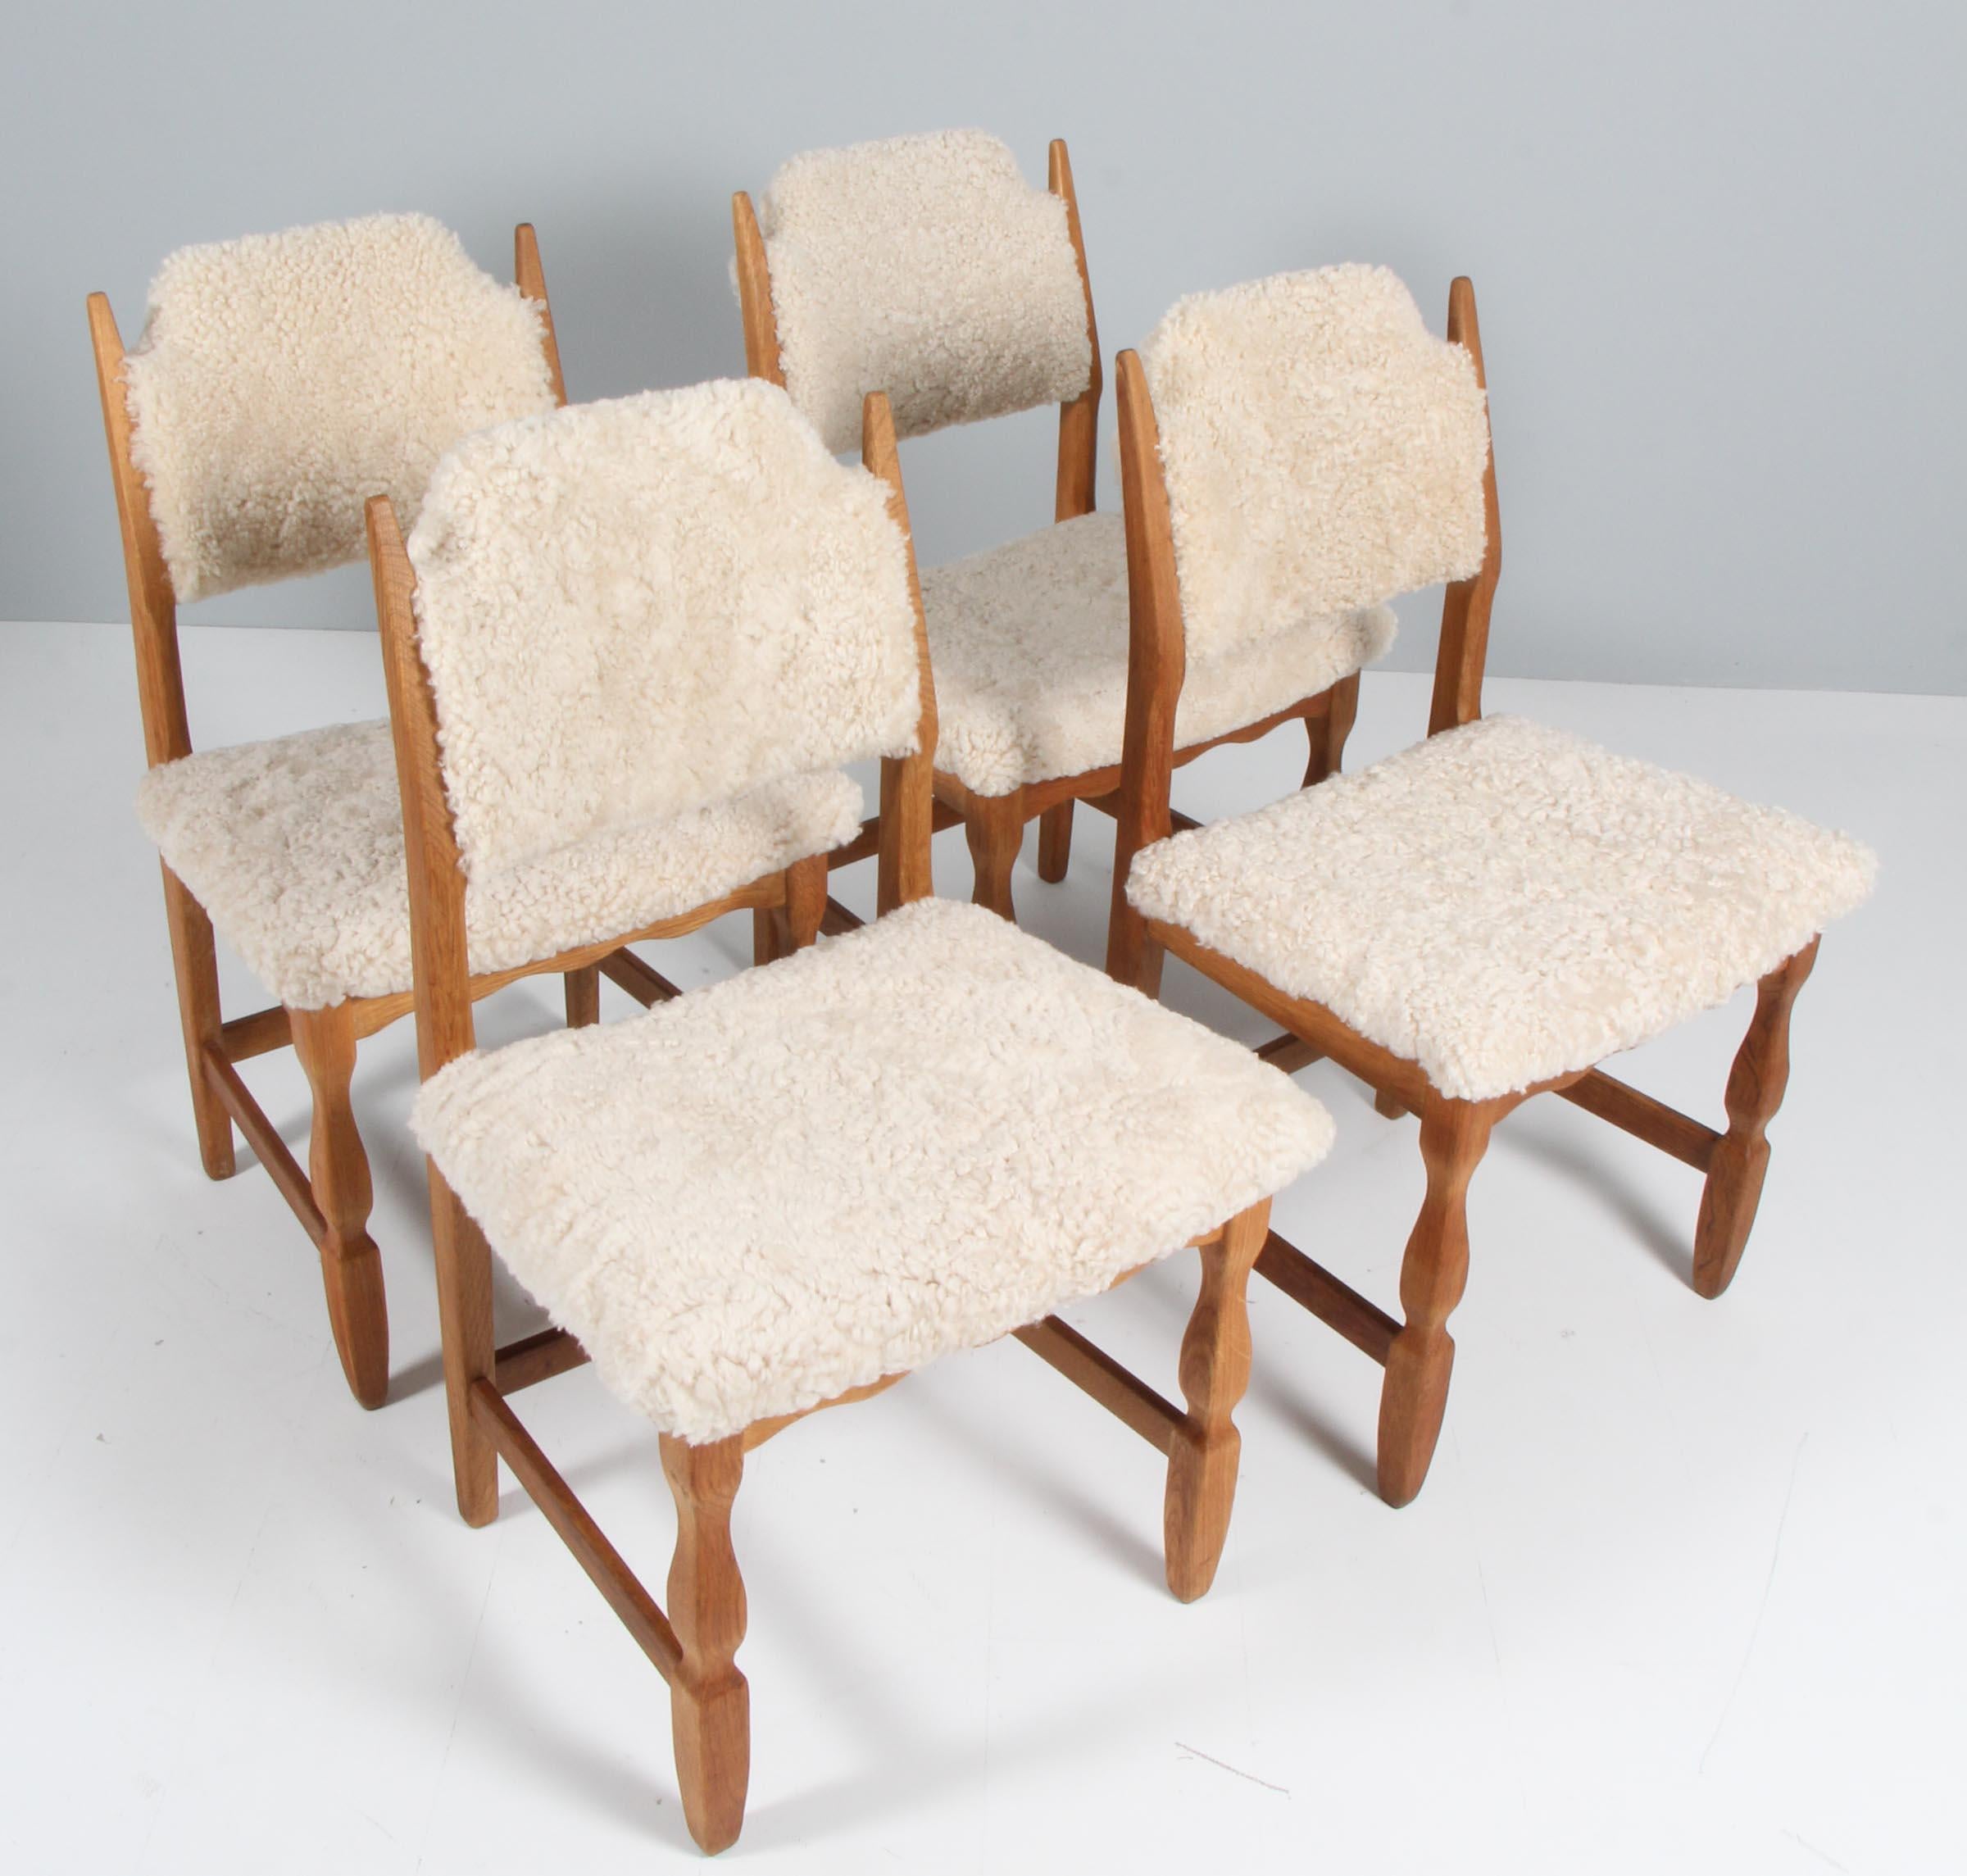 Ensemble de chaises de salle à manger de Henning Kjærnulf, en chêne et recouvertes de peau d'agneau.

Un design rafraîchissant où le baroque audacieux se marie bien avec le modernisme du milieu du siècle.

Modèle : Lame de rasoir

Fabriqué par EG